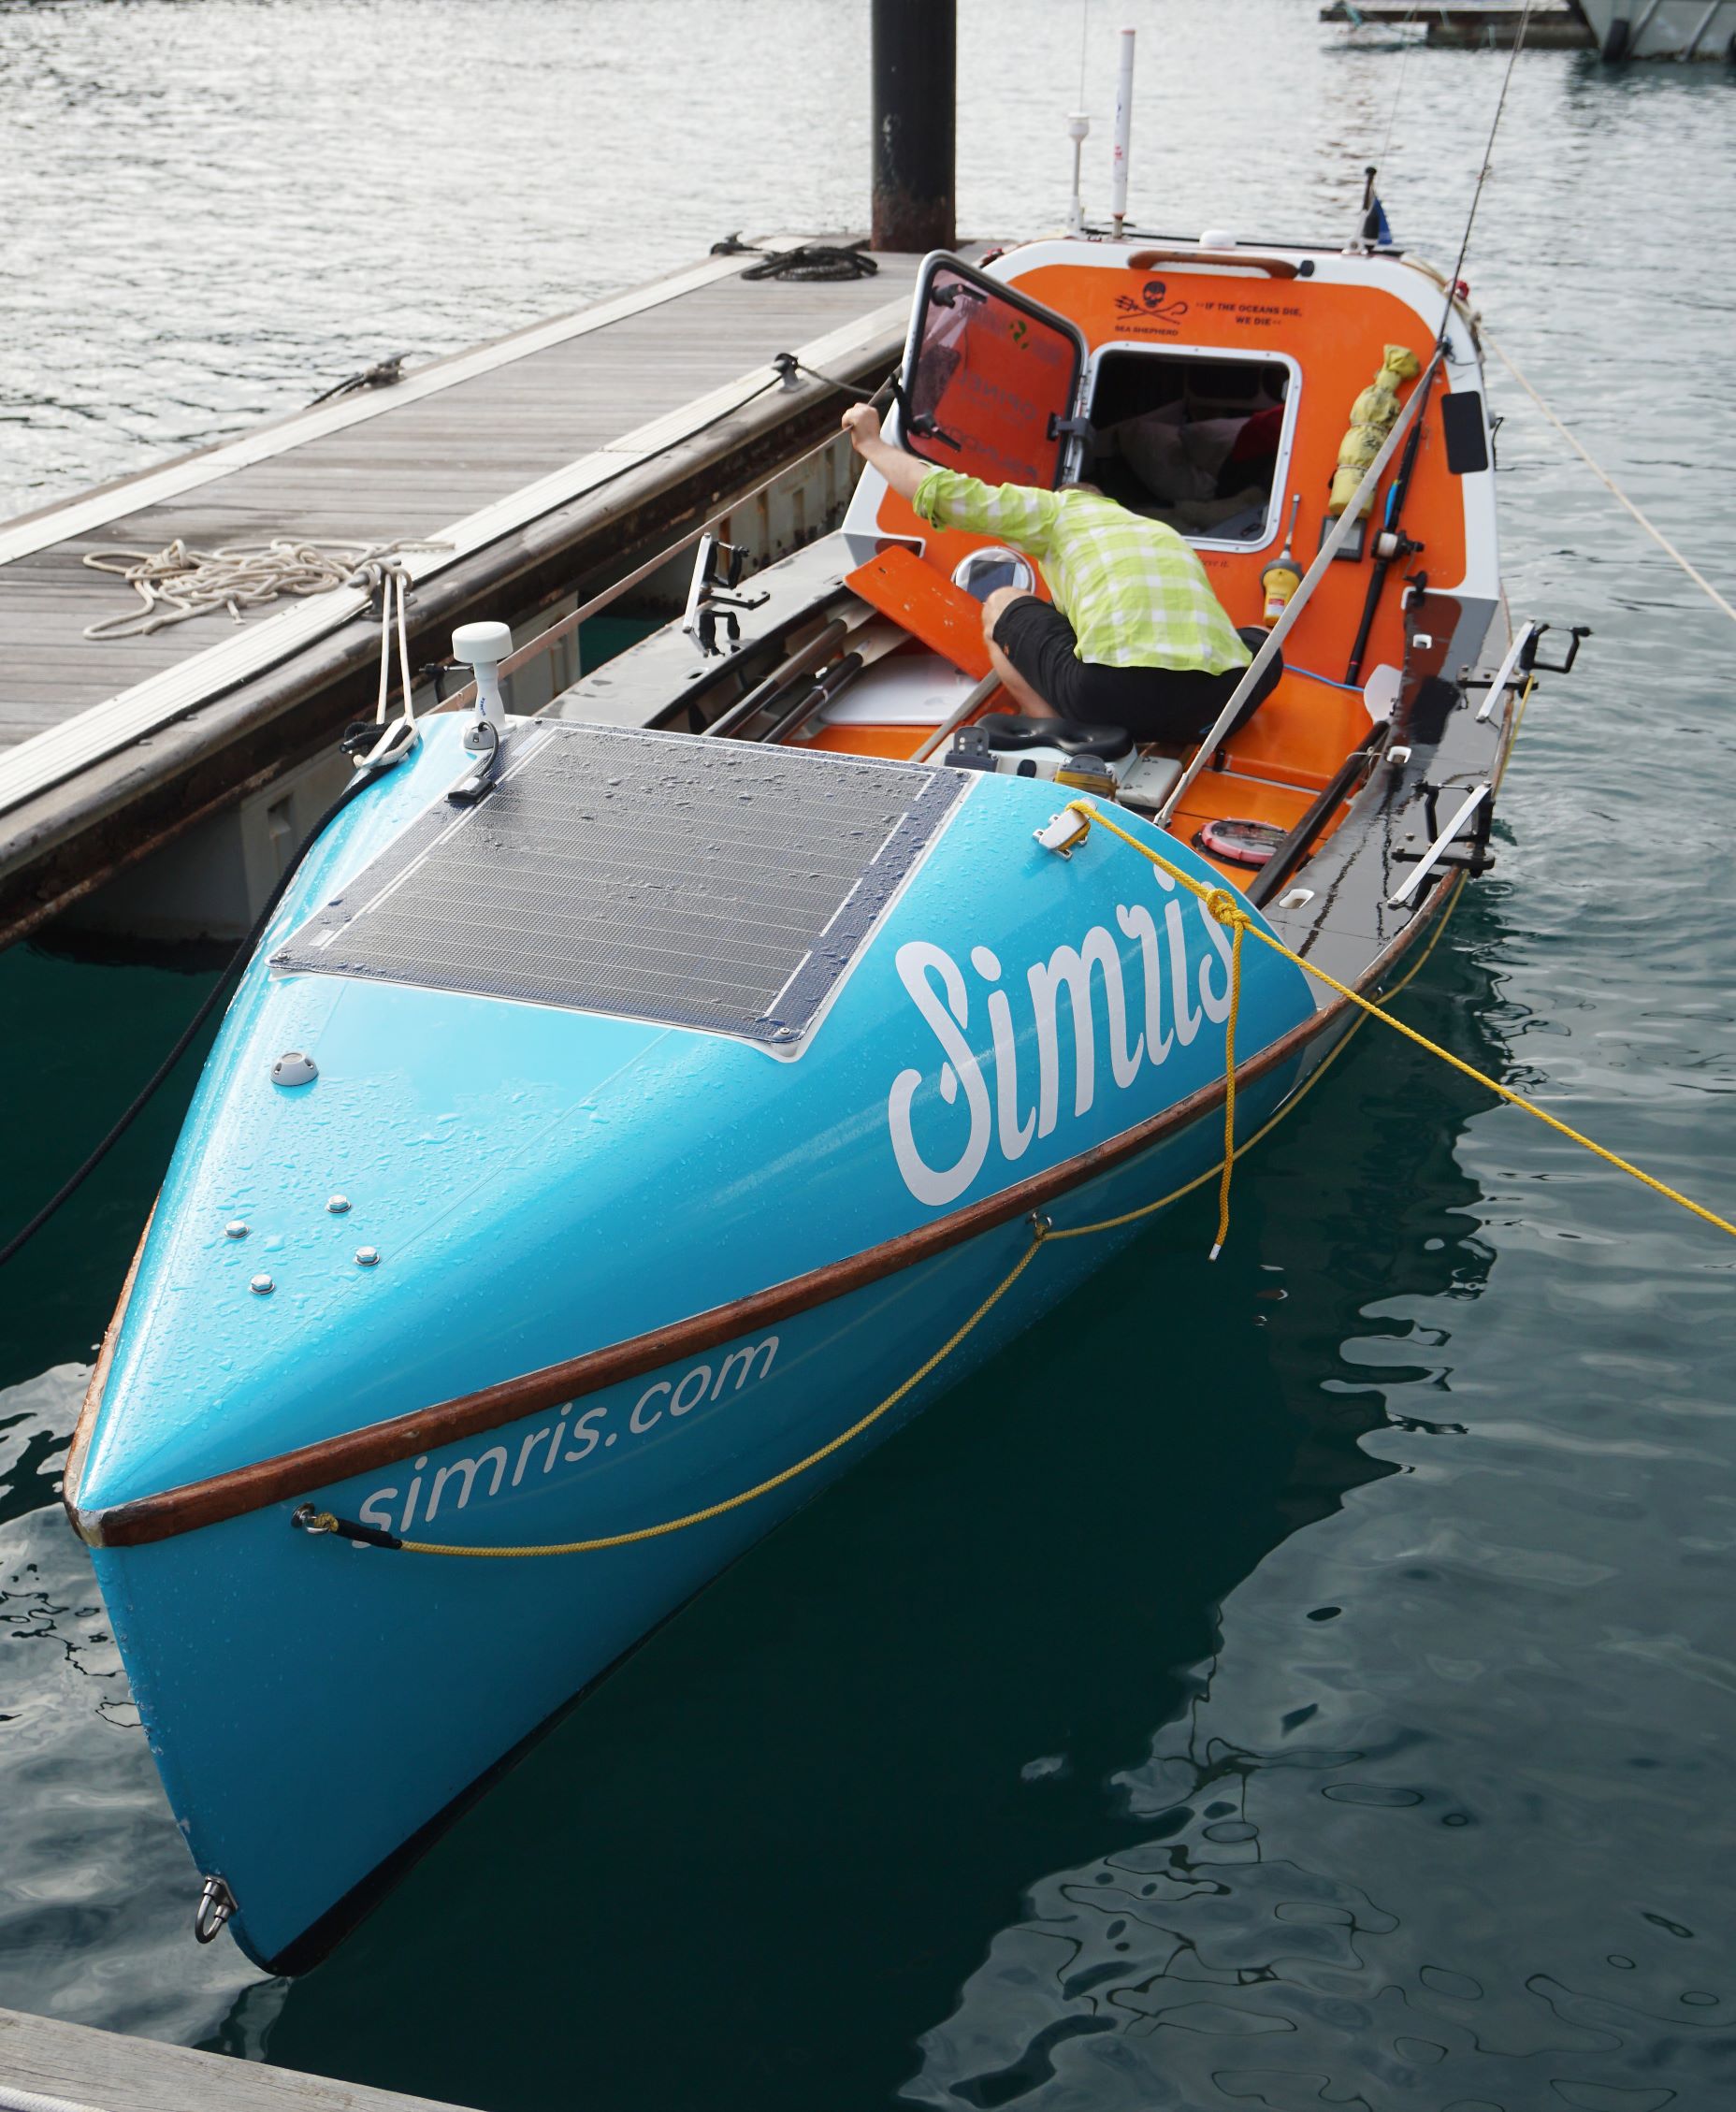 Fiberglass ocean rowing boat including equipment is SOLD